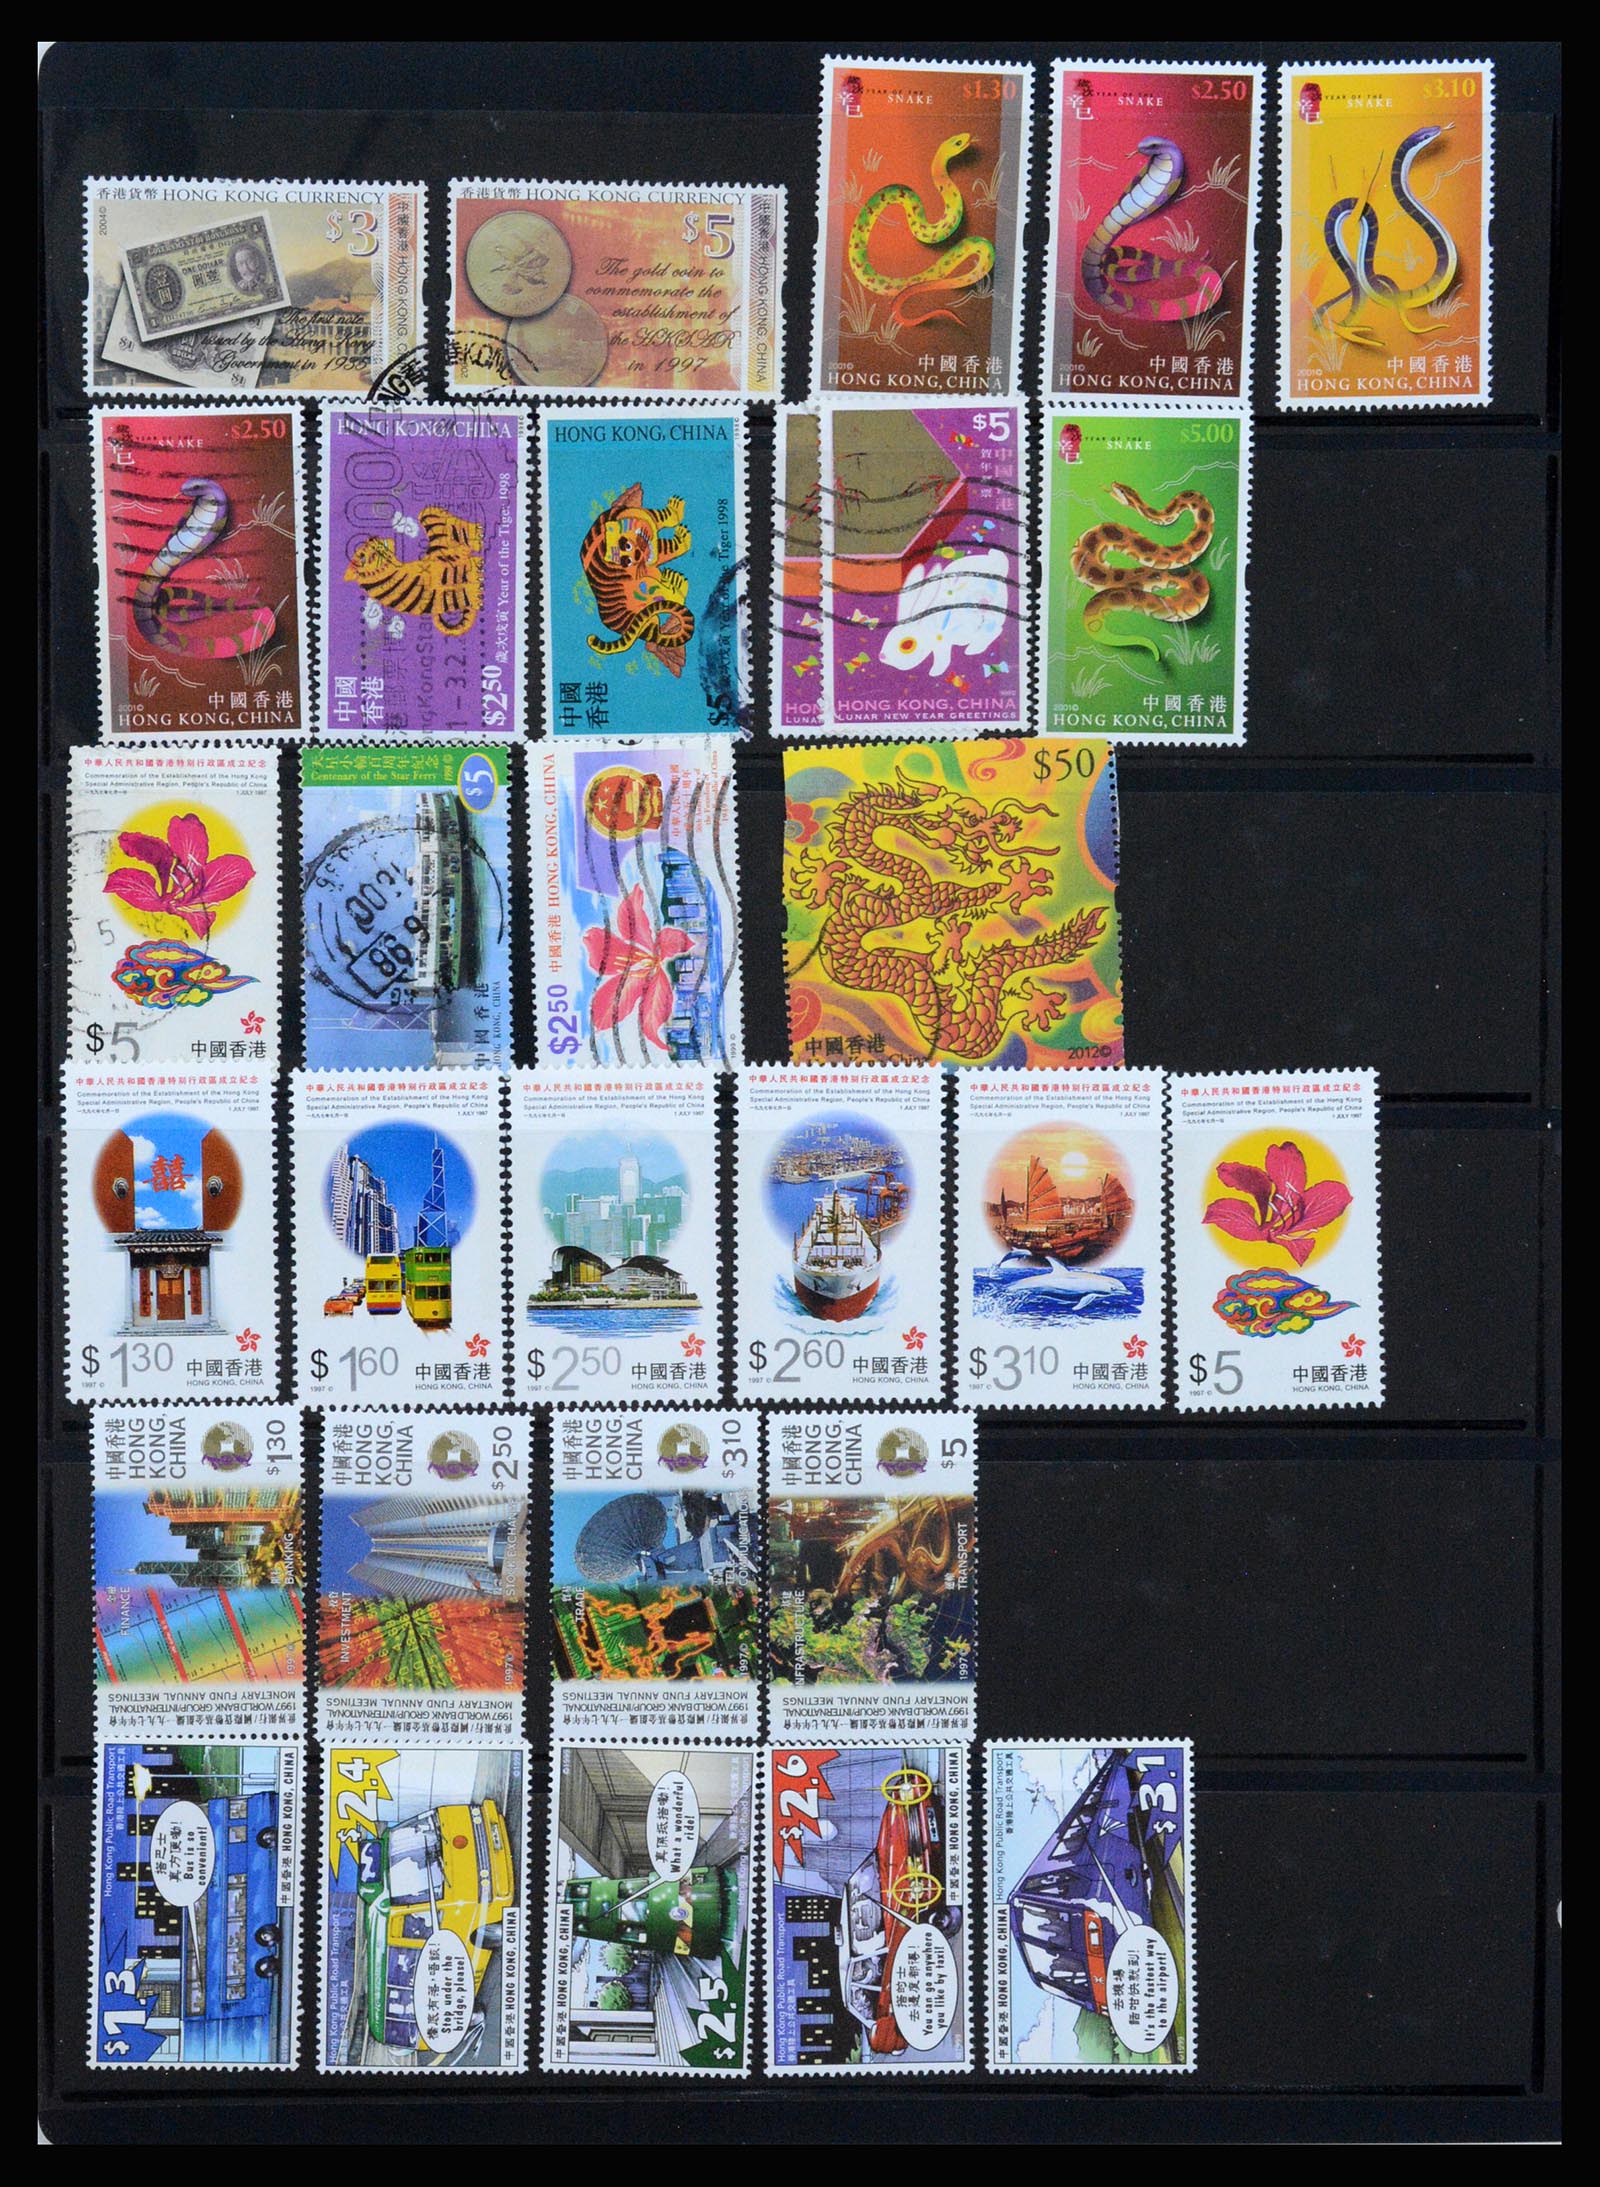 37210 095 - Stamp collection 37210 Hong Kong 1862-2000.